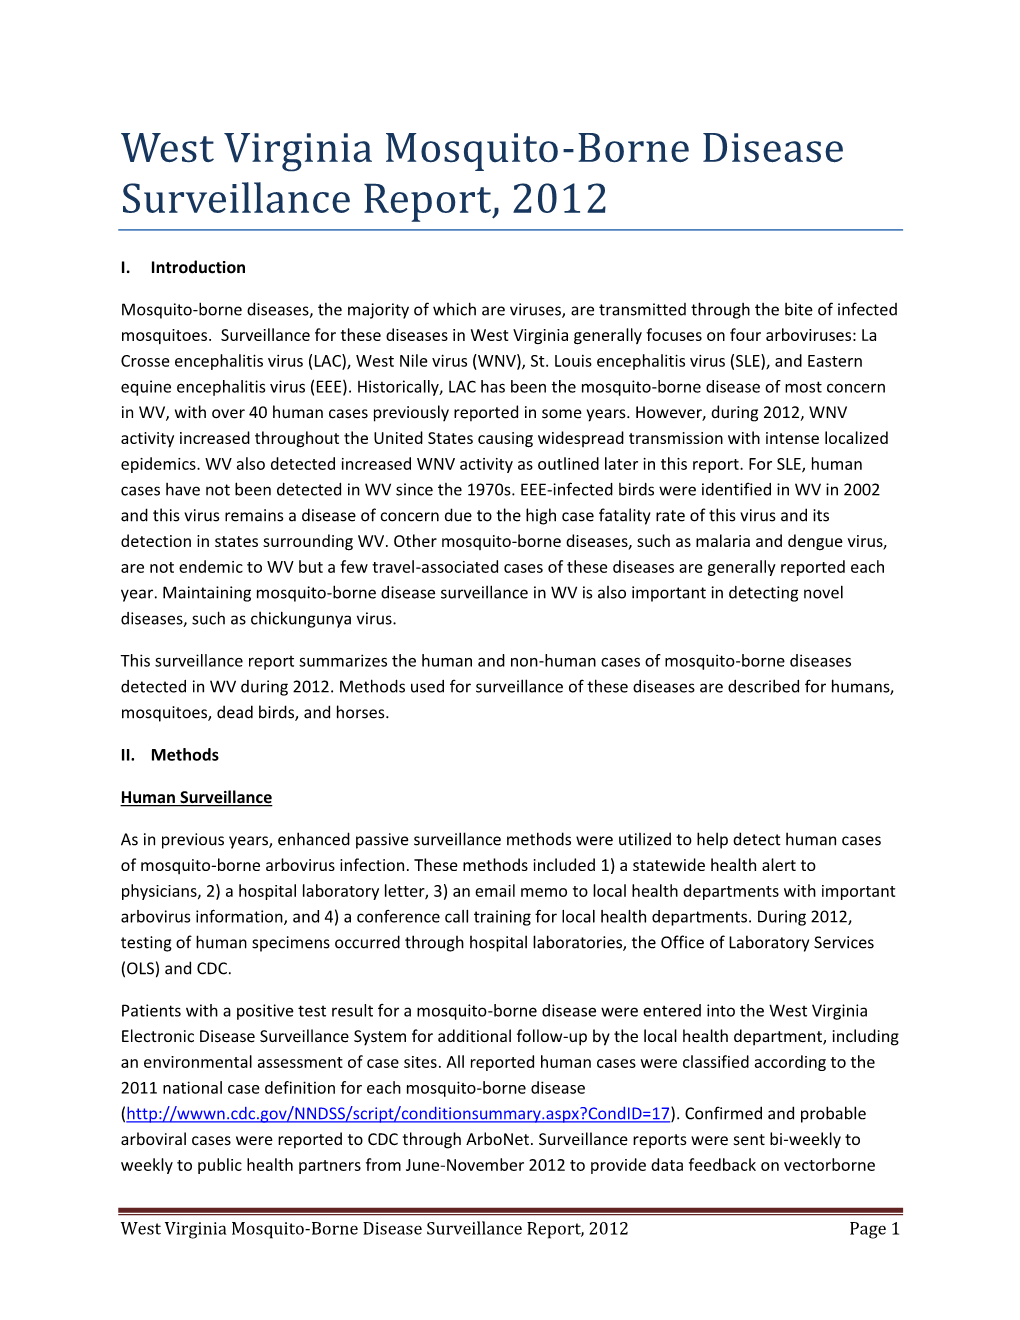 West Virginia Mosquito-Borne Disease Surveillance Report, 2012